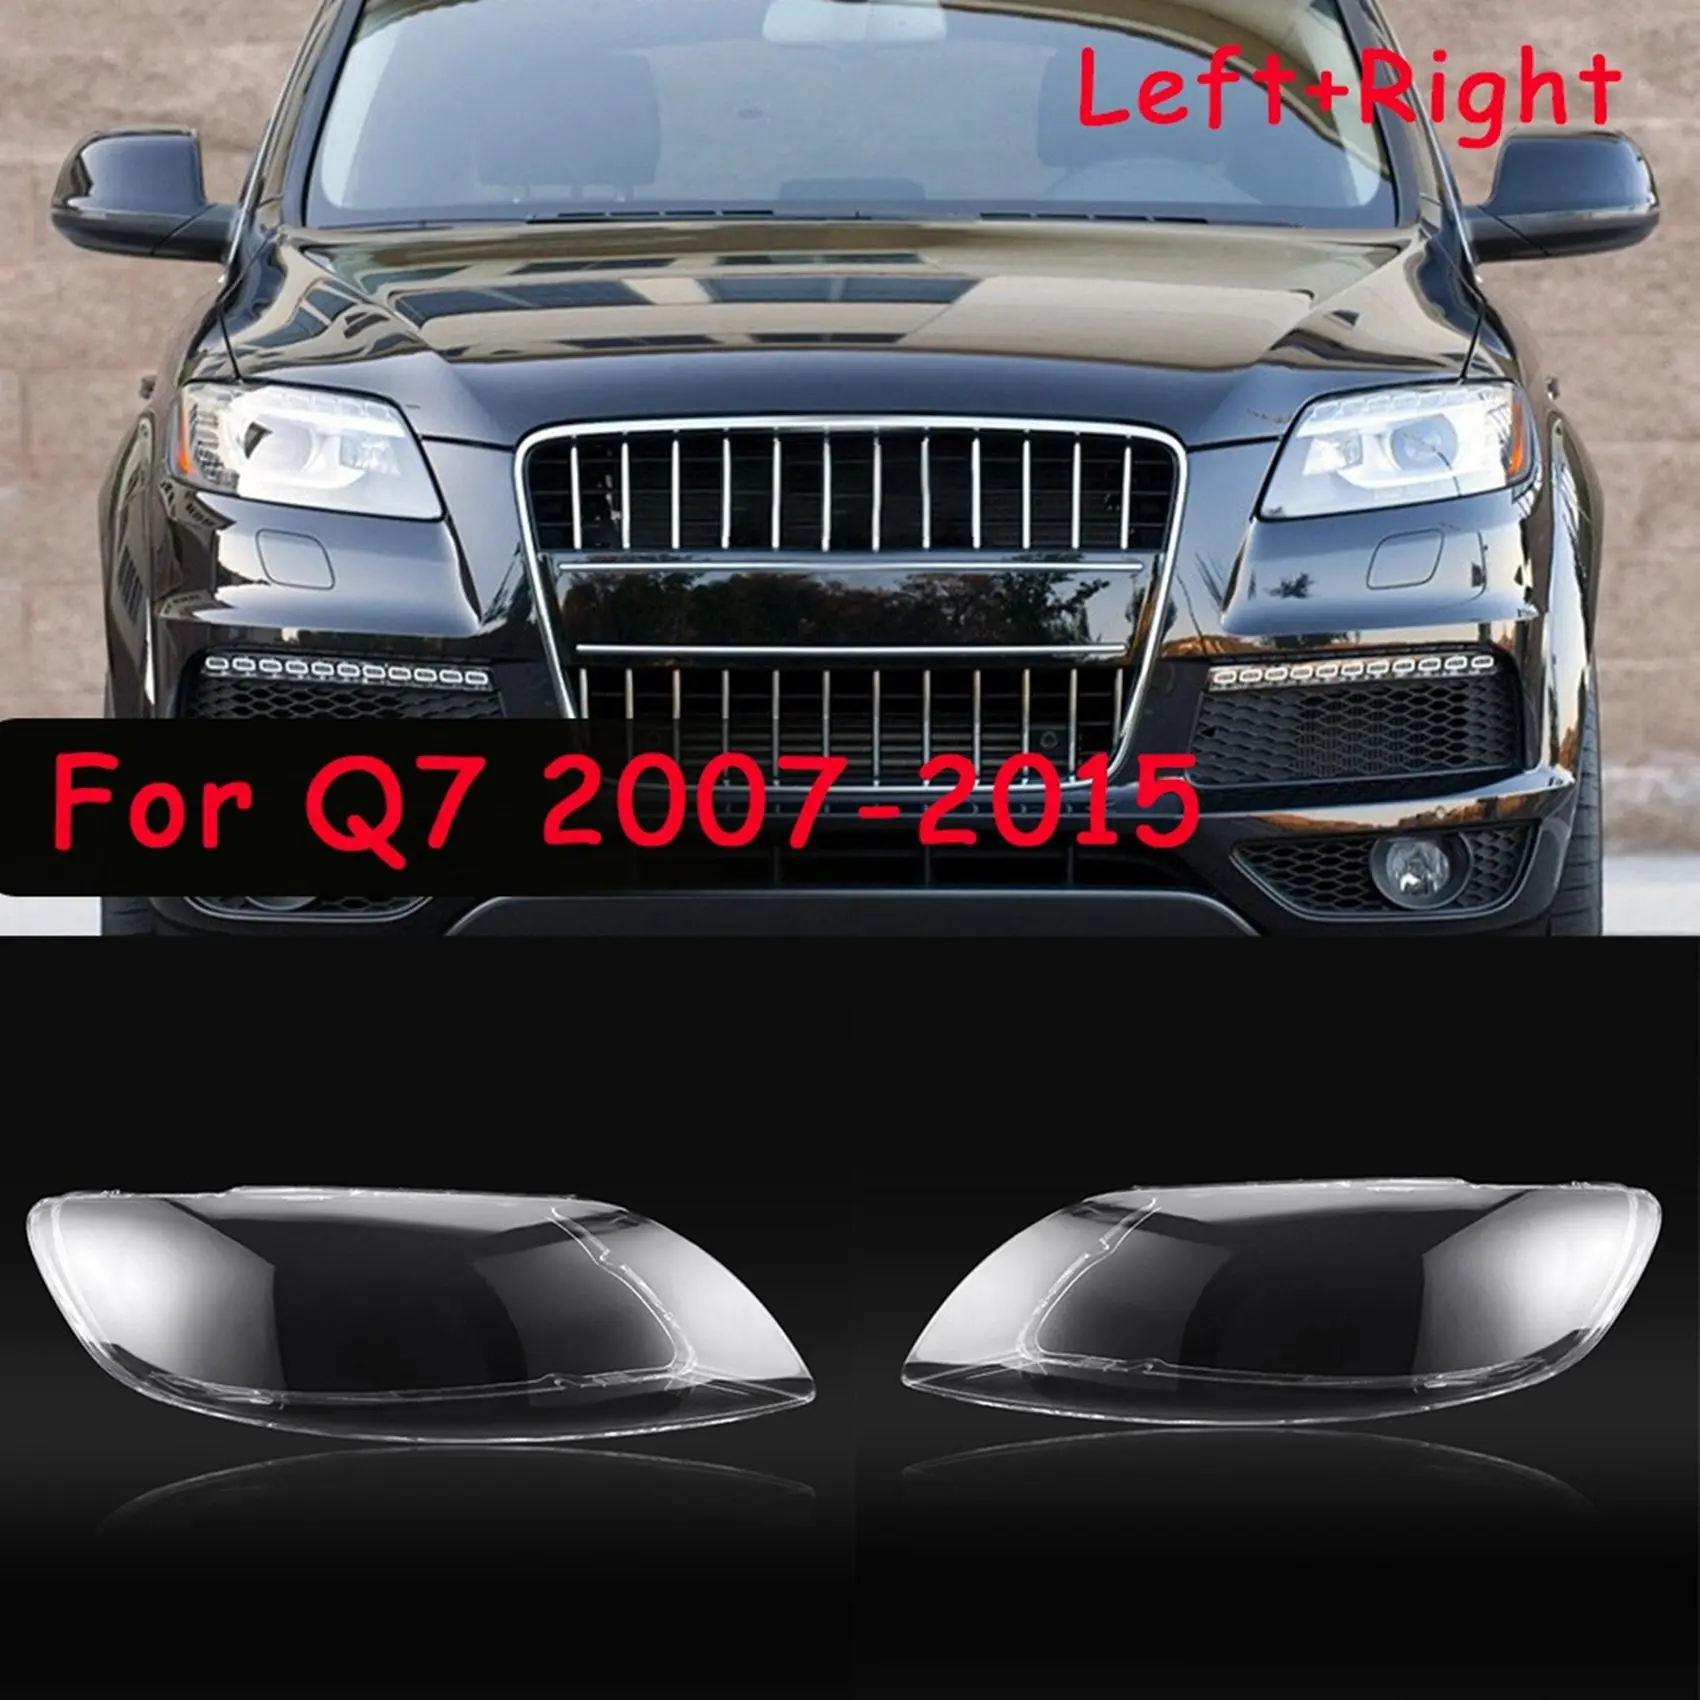 

Автомобильная Левая крышка фары передняя крышка объектива передняя автомобильная лампа для Audi Q7 2007-2015